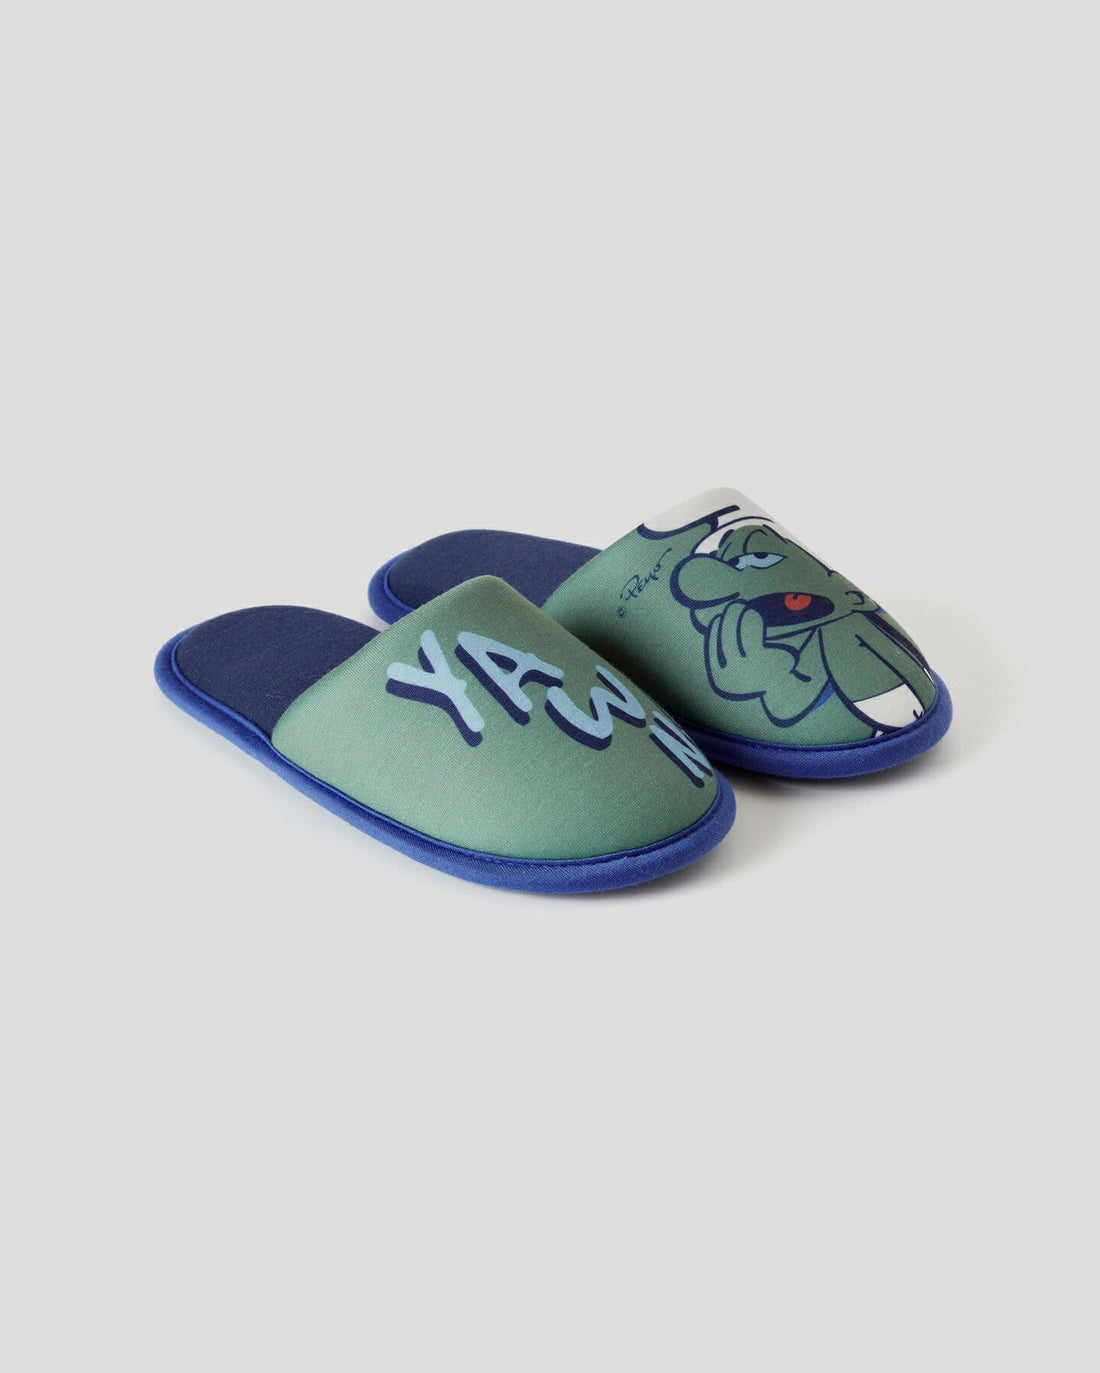 Green Smurfs Slippers